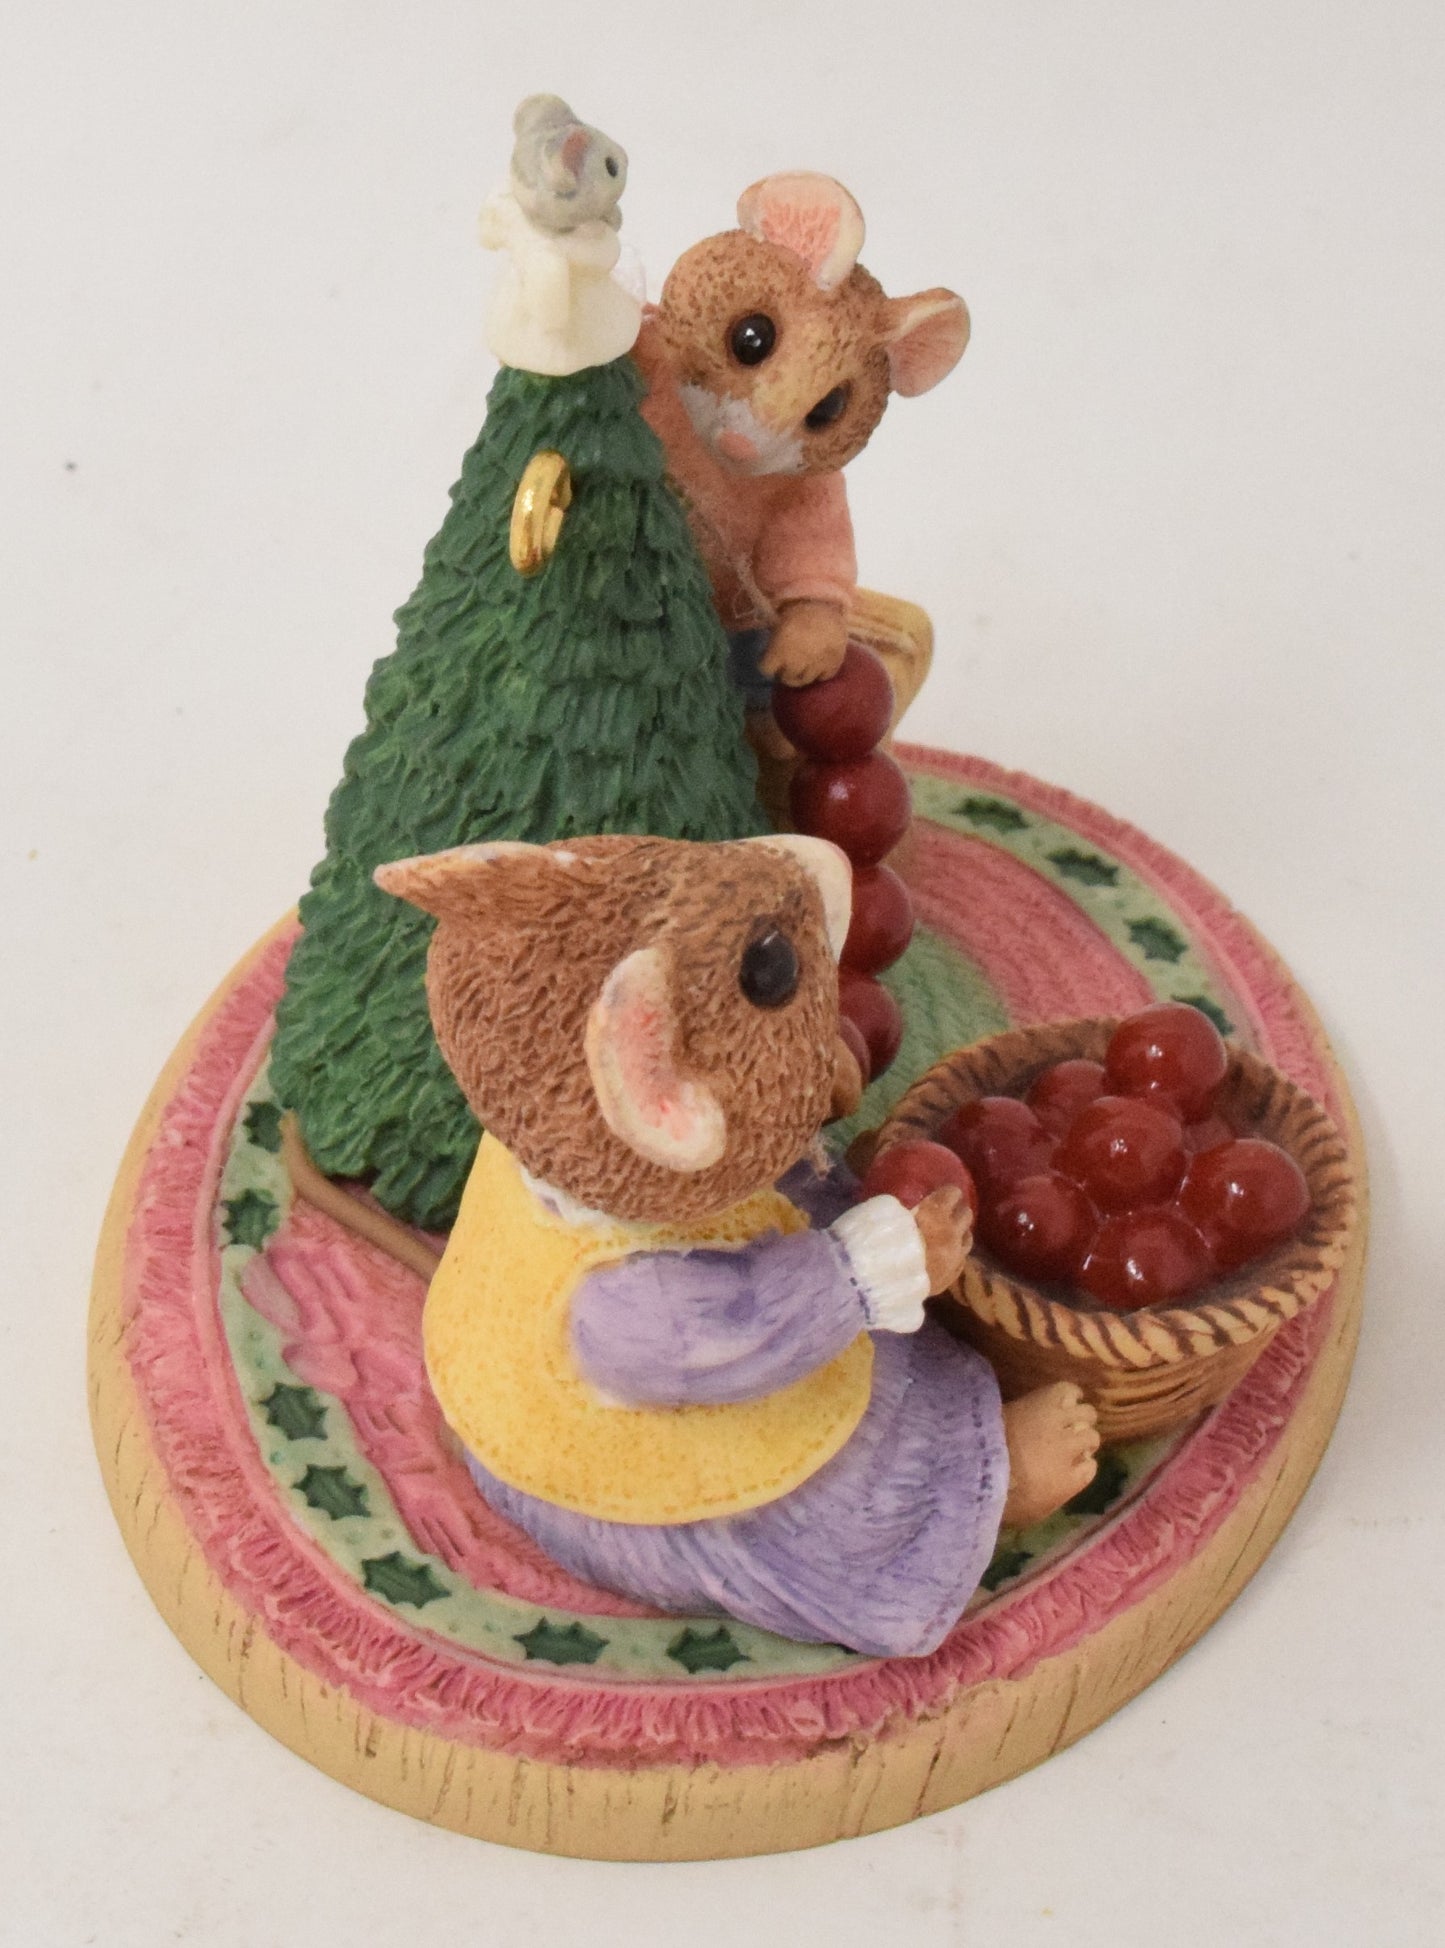 Hallmark Keepsake Perfect Tree Mouse Christmas Ornament 1997 NIB